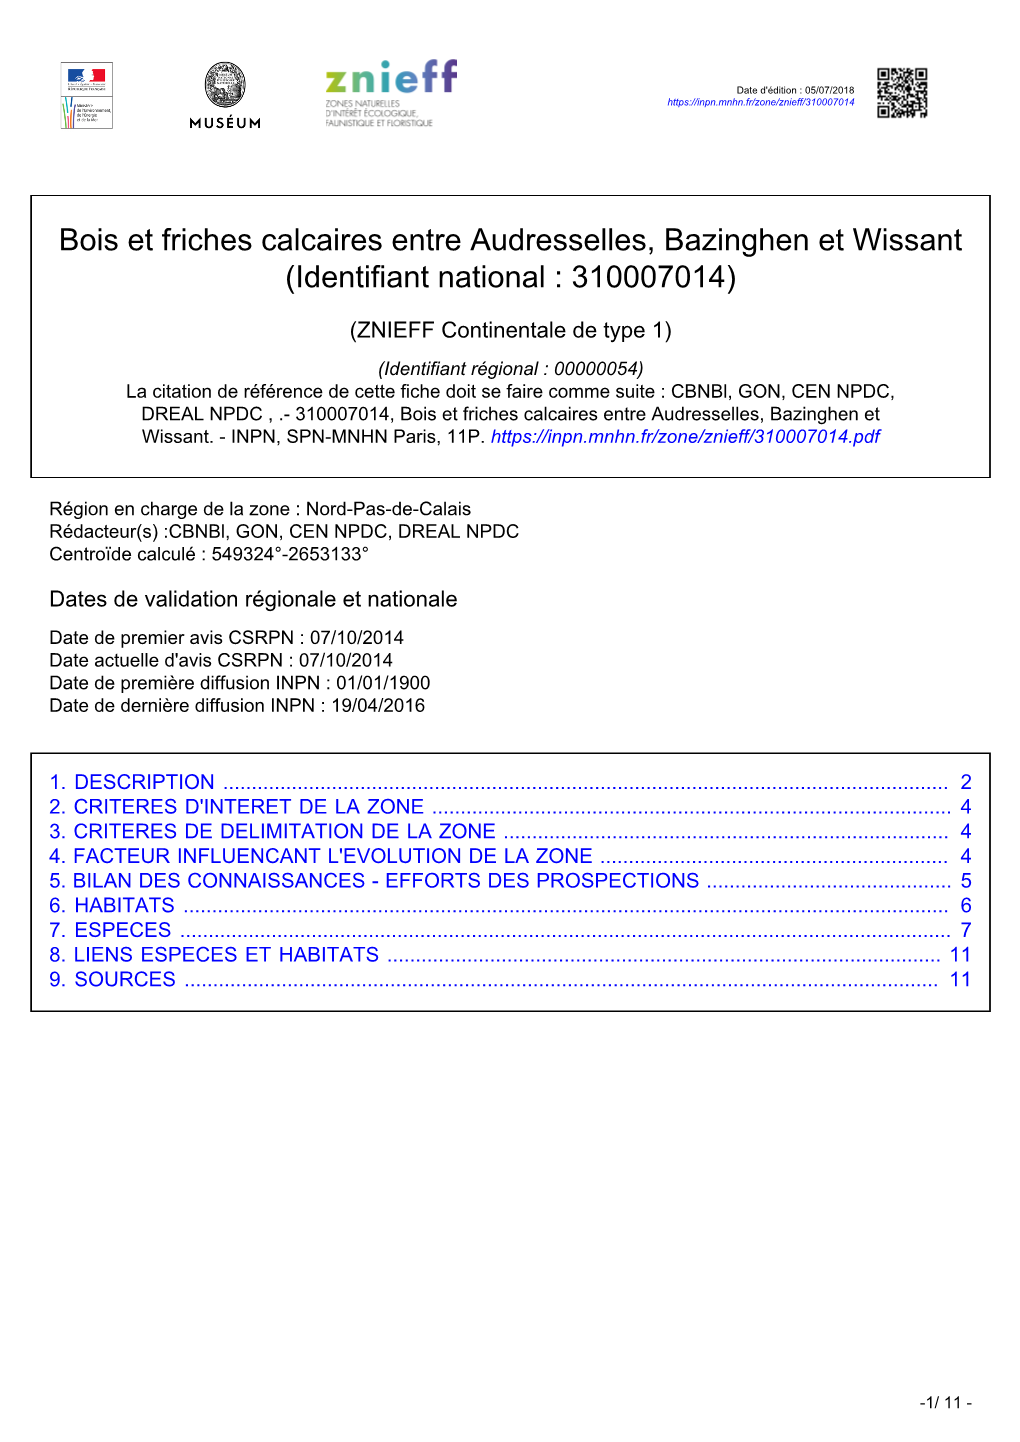 Bois Et Friches Calcaires Entre Audresselles, Bazinghen Et Wissant (Identifiant National : 310007014)